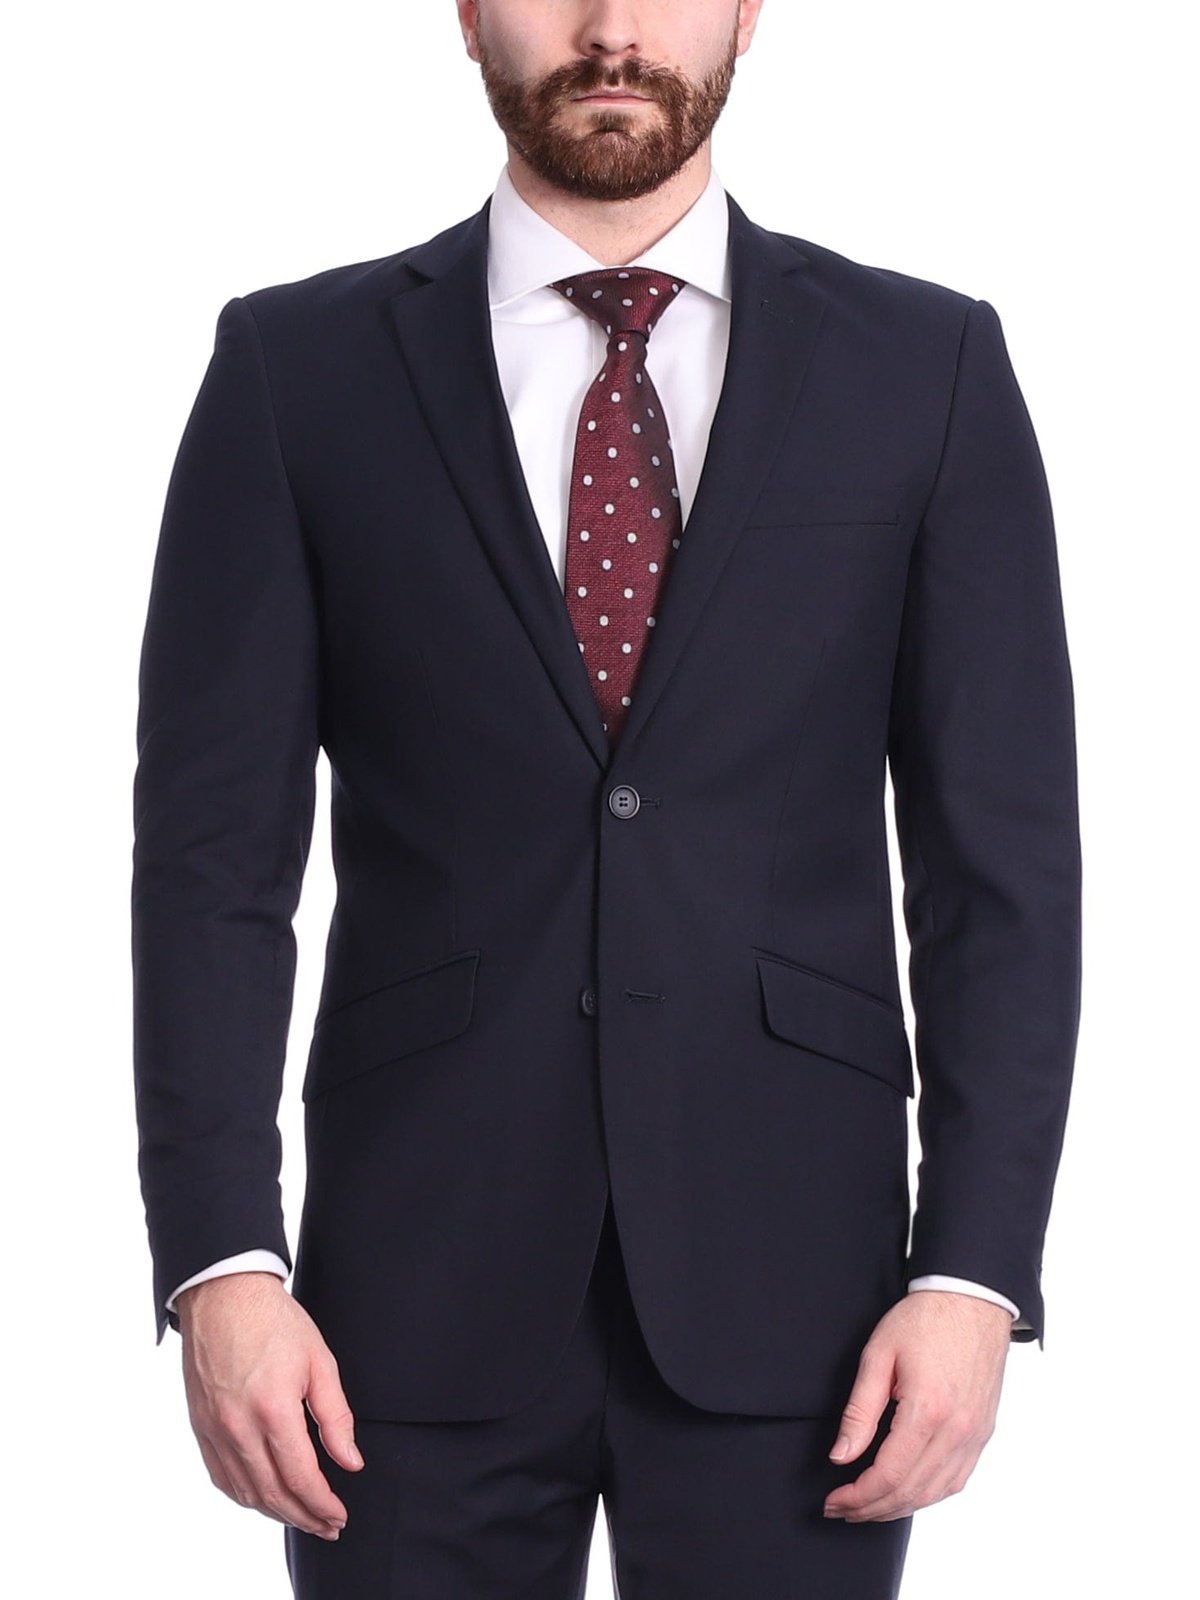 Premium Two Piece Suit for Men Office Suit Formal Suit , two piece